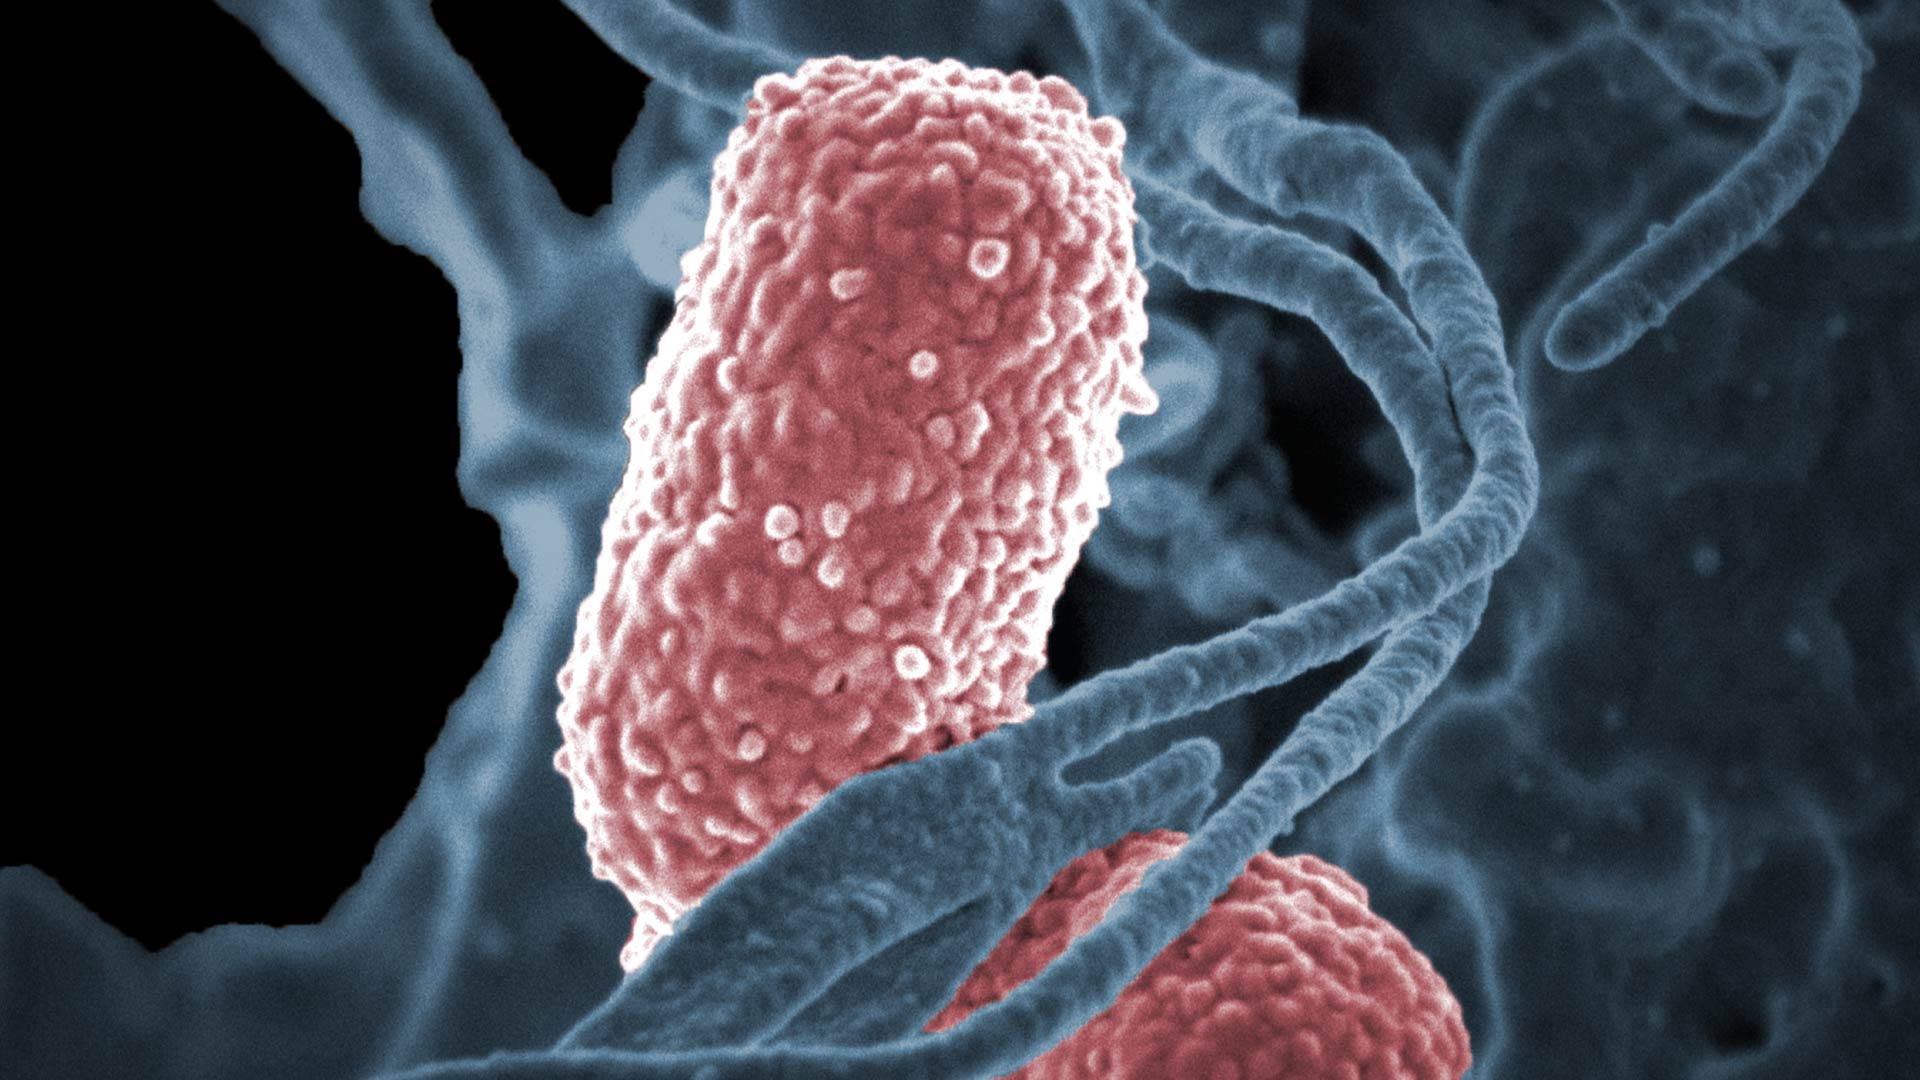 La bacteria Shigella causa afección gastrointestinal y también se la detecto en uno de las personas fallecidas en Berazategui (NIH)
